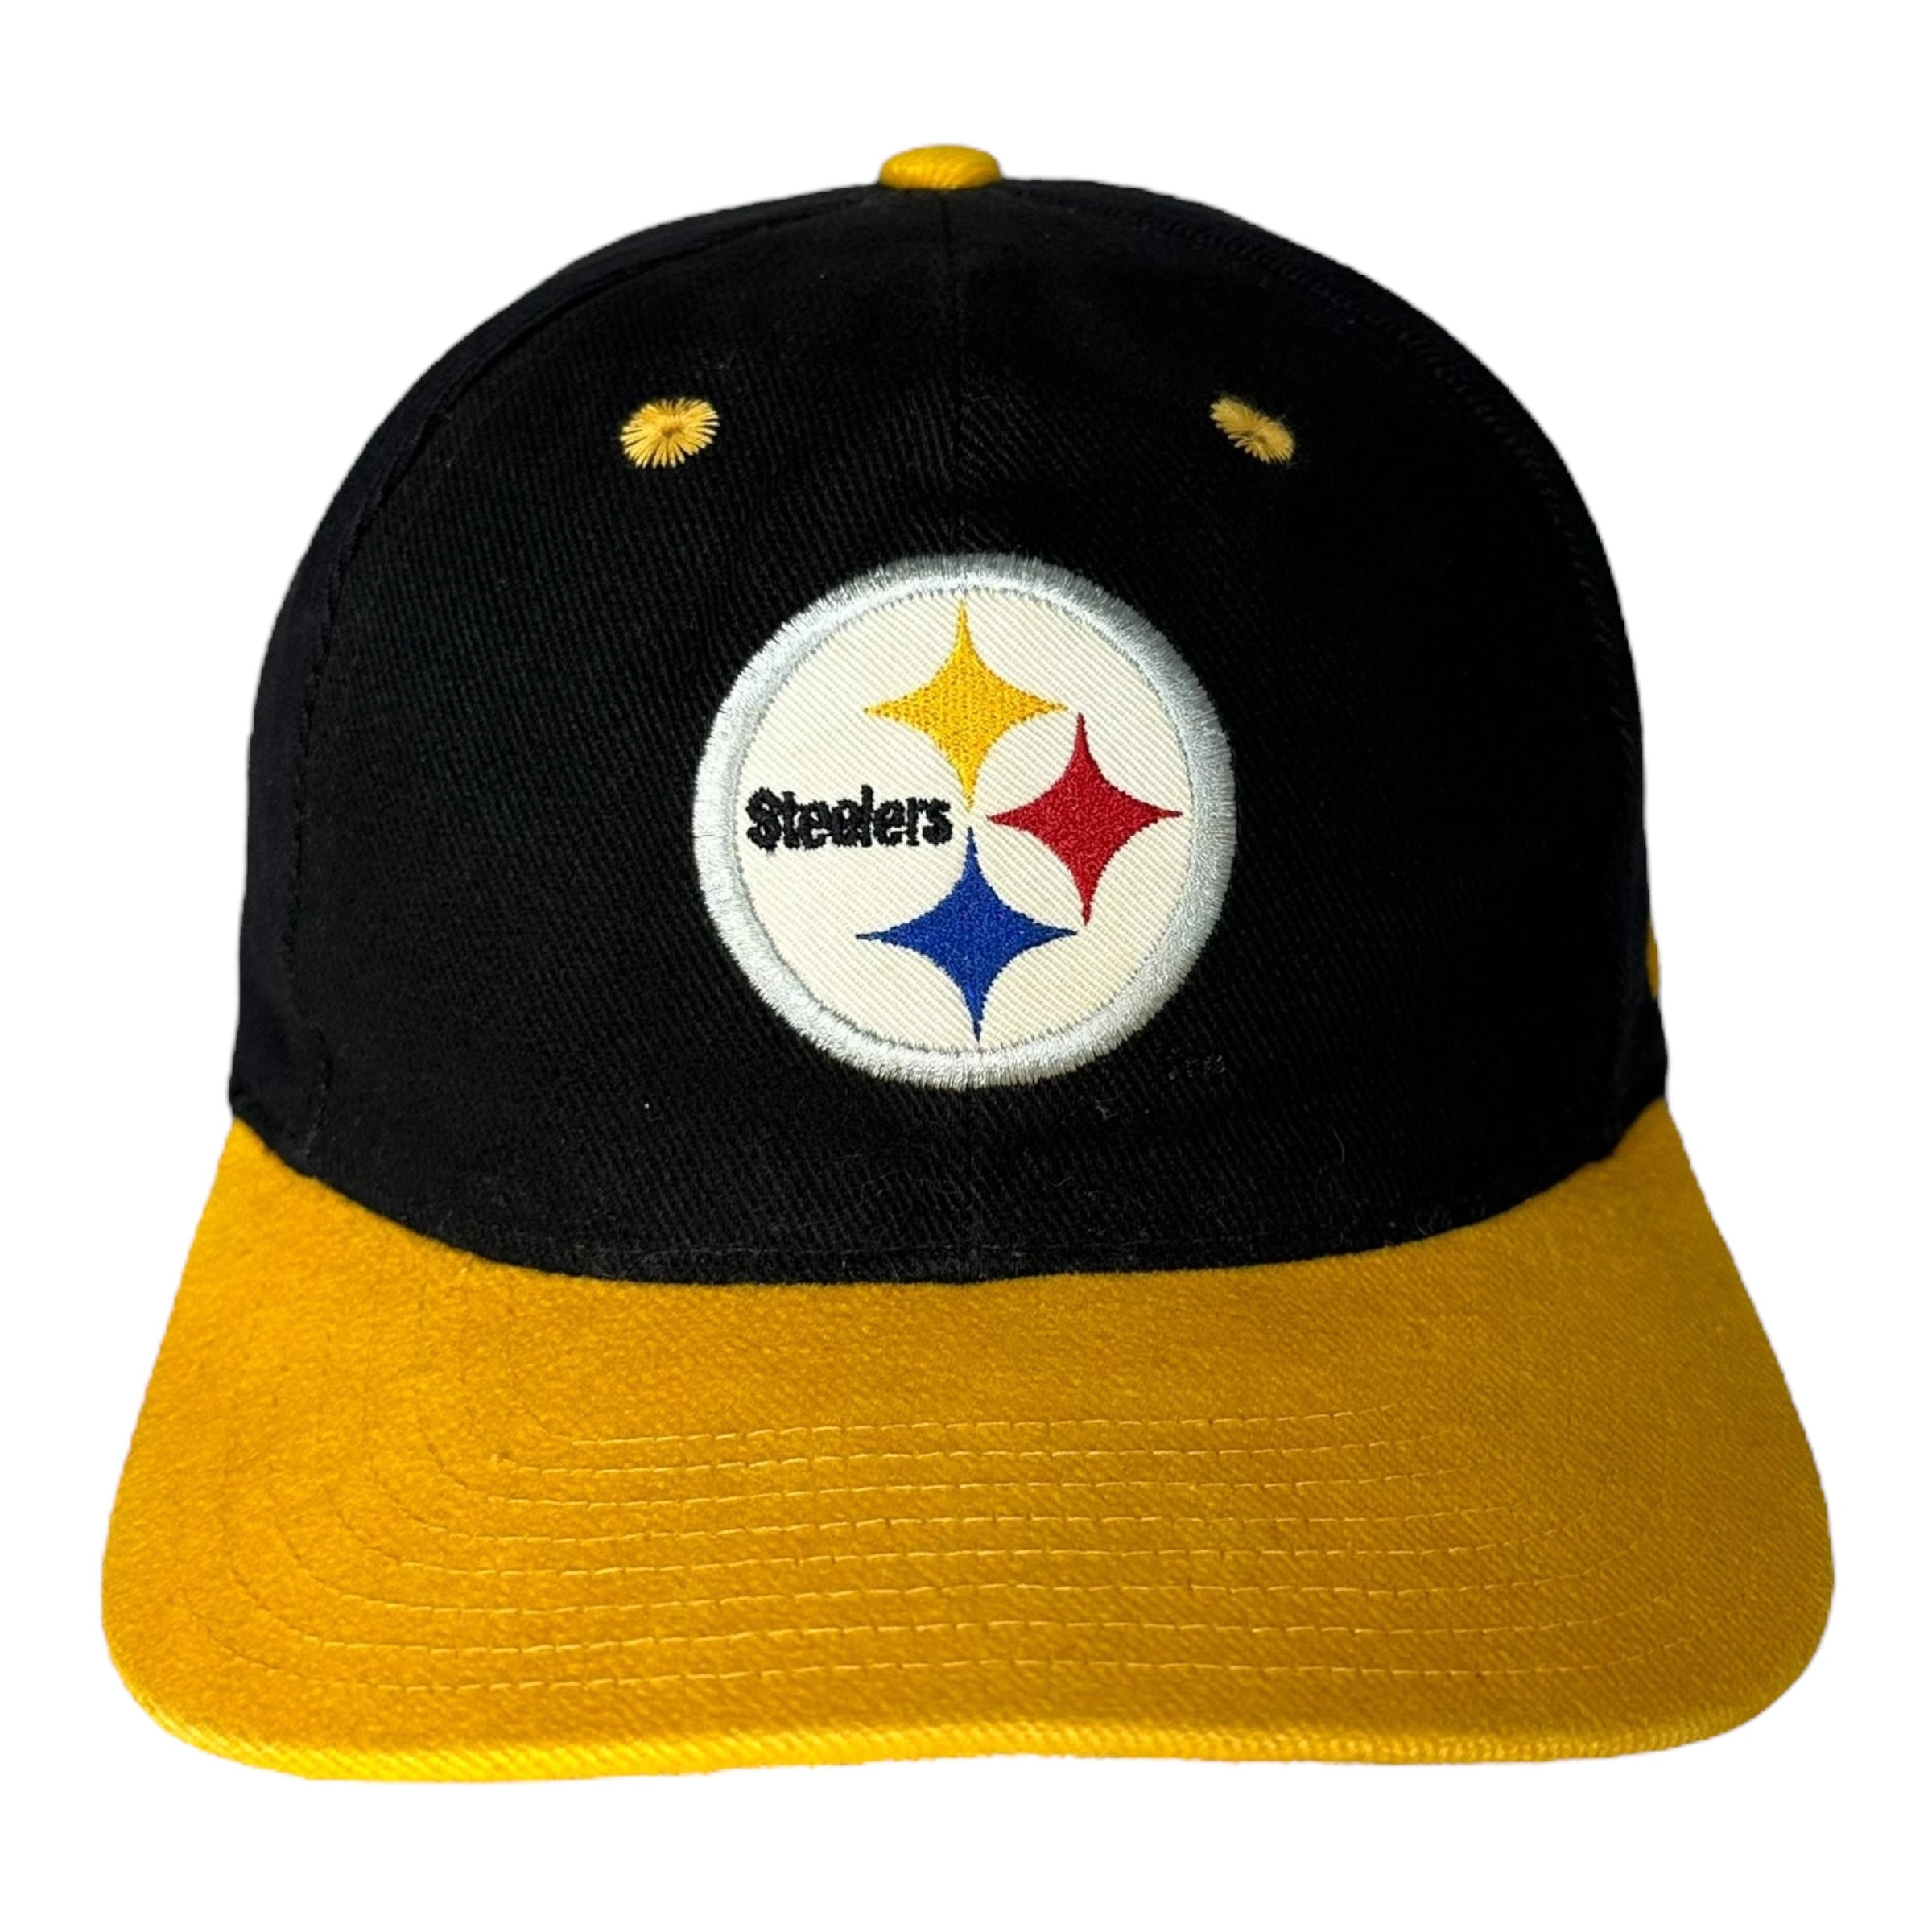 Vintage Nike Pittsburgh Steelers Snapback